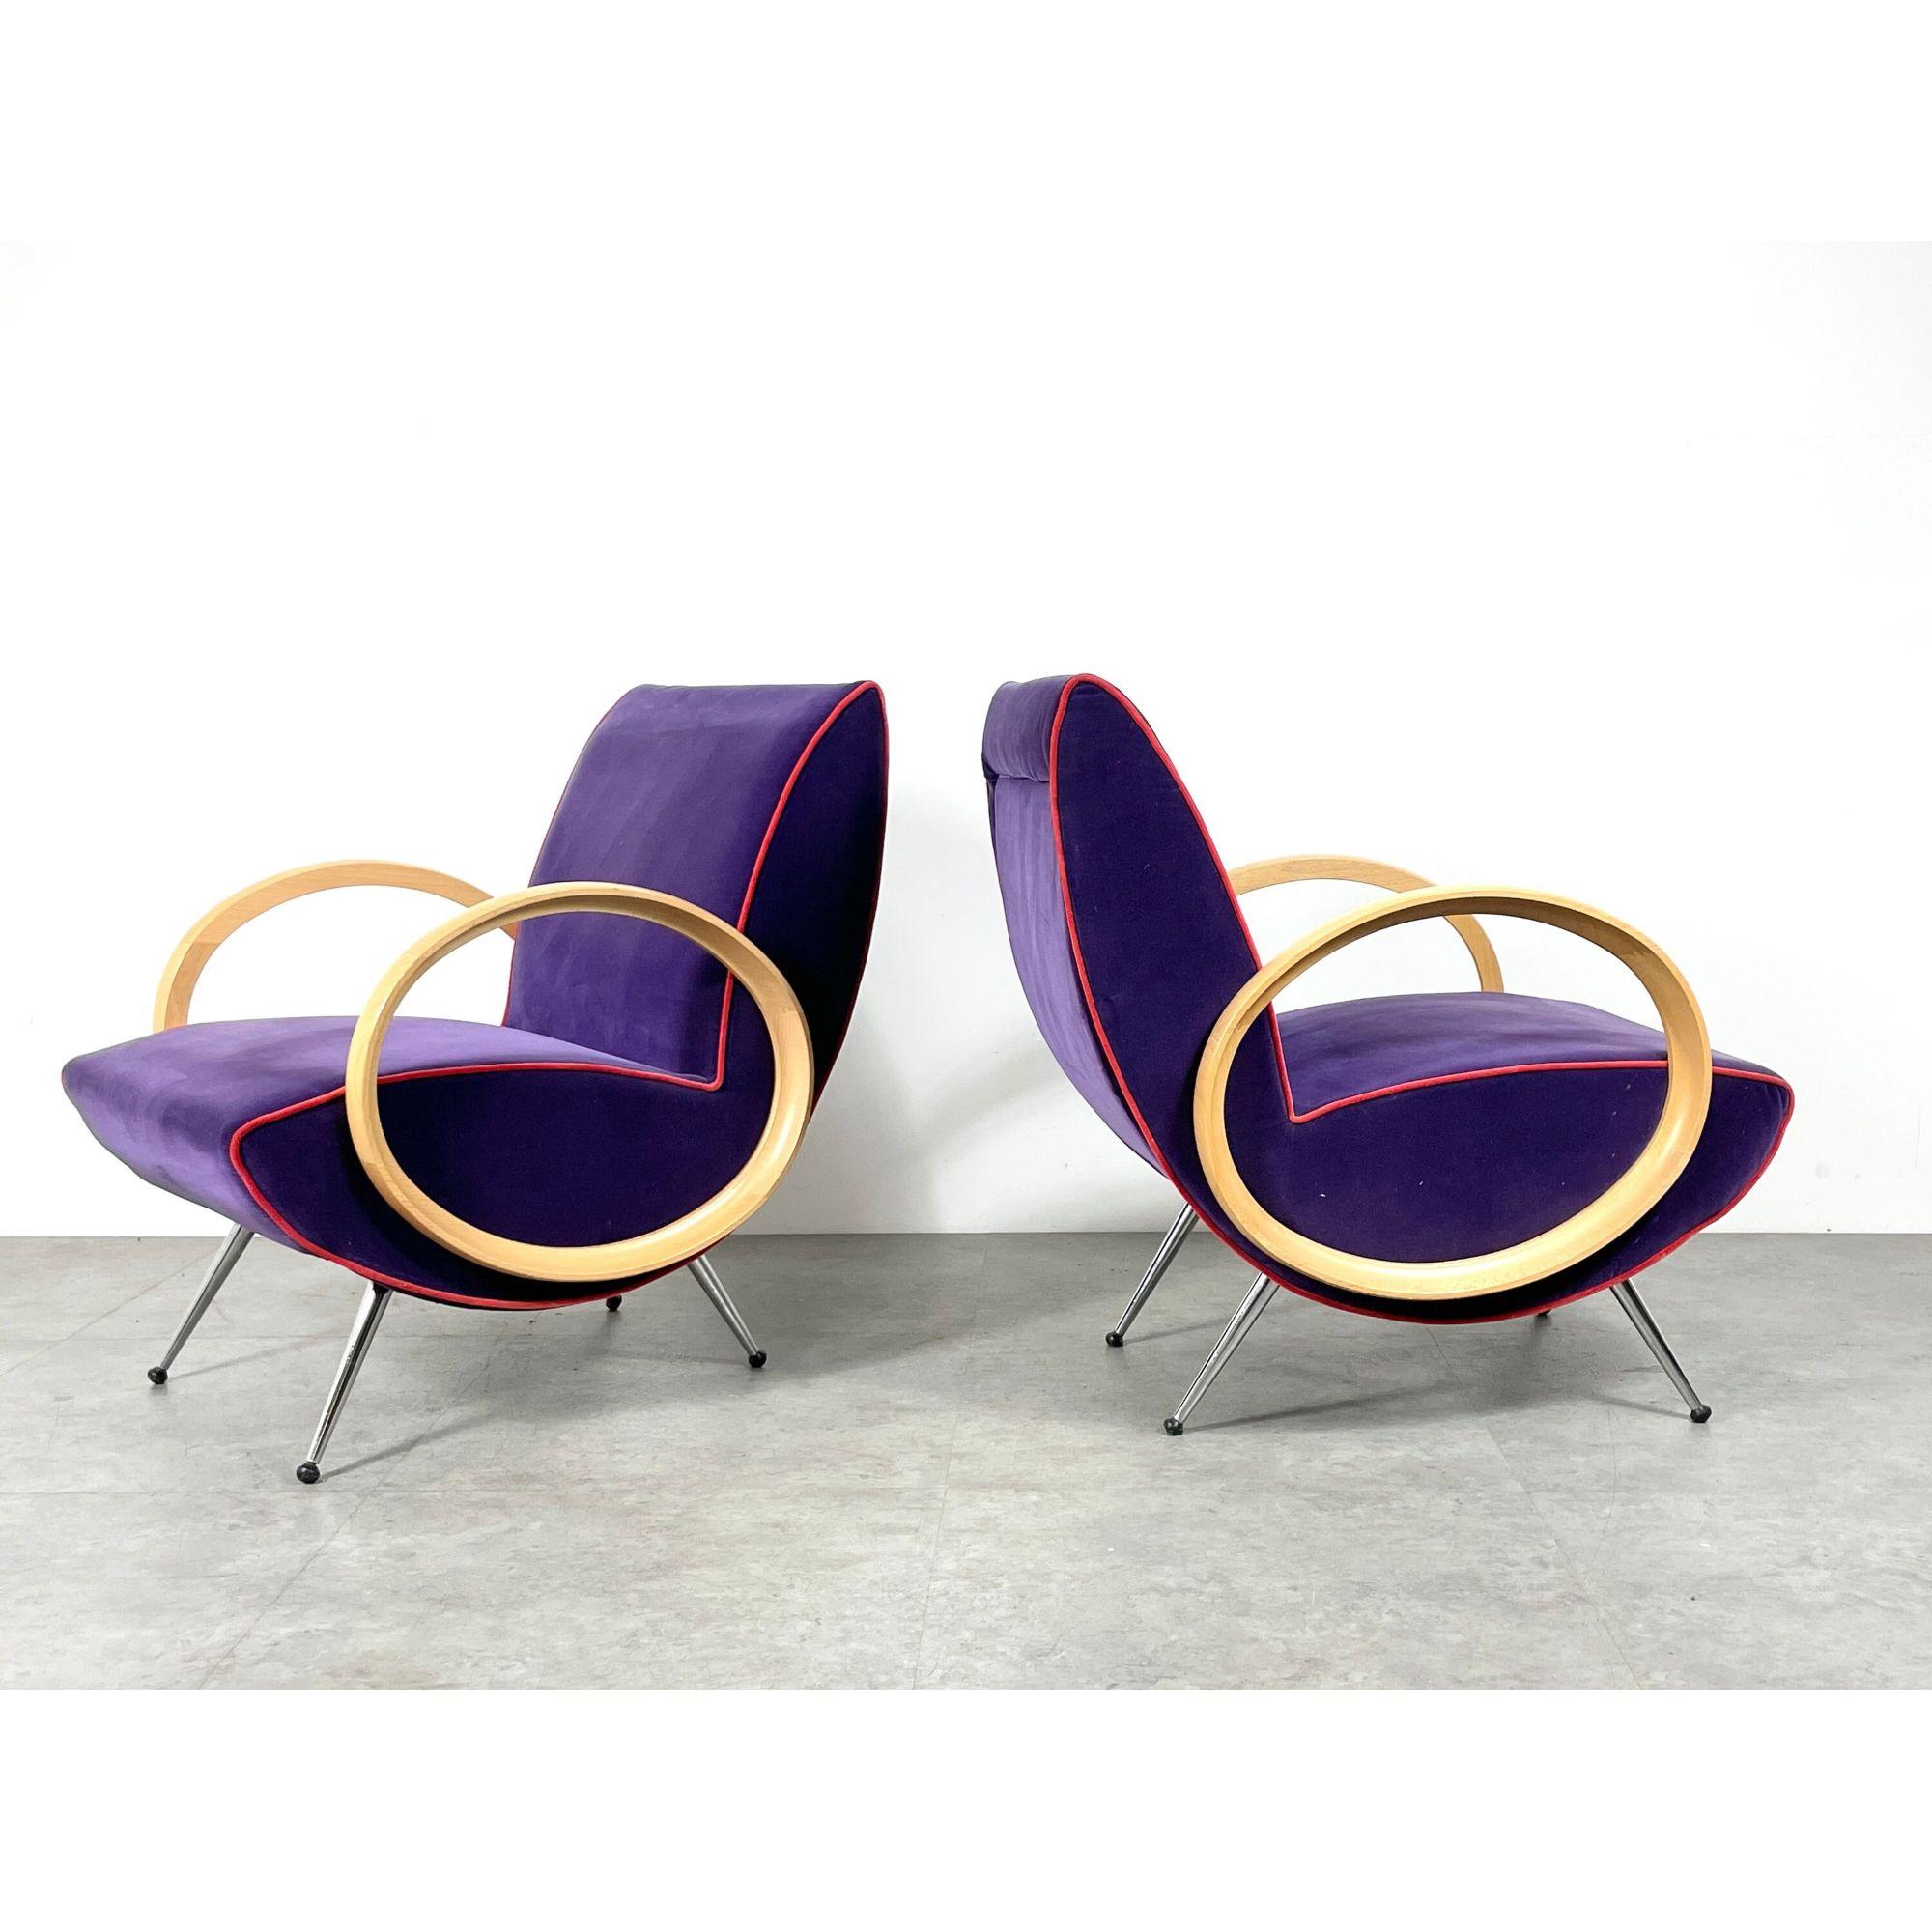 Vintage Pair Post Modern Chrome Italian Lounge Chairs In the Manner Of Marco Zanuso

Paire de chaises longues sculpturales incroyablement uniques, circa 1990
Design/One moderne avec accoudoirs en hêtre sculpté en forme d'ellipse.
Rembourrage en